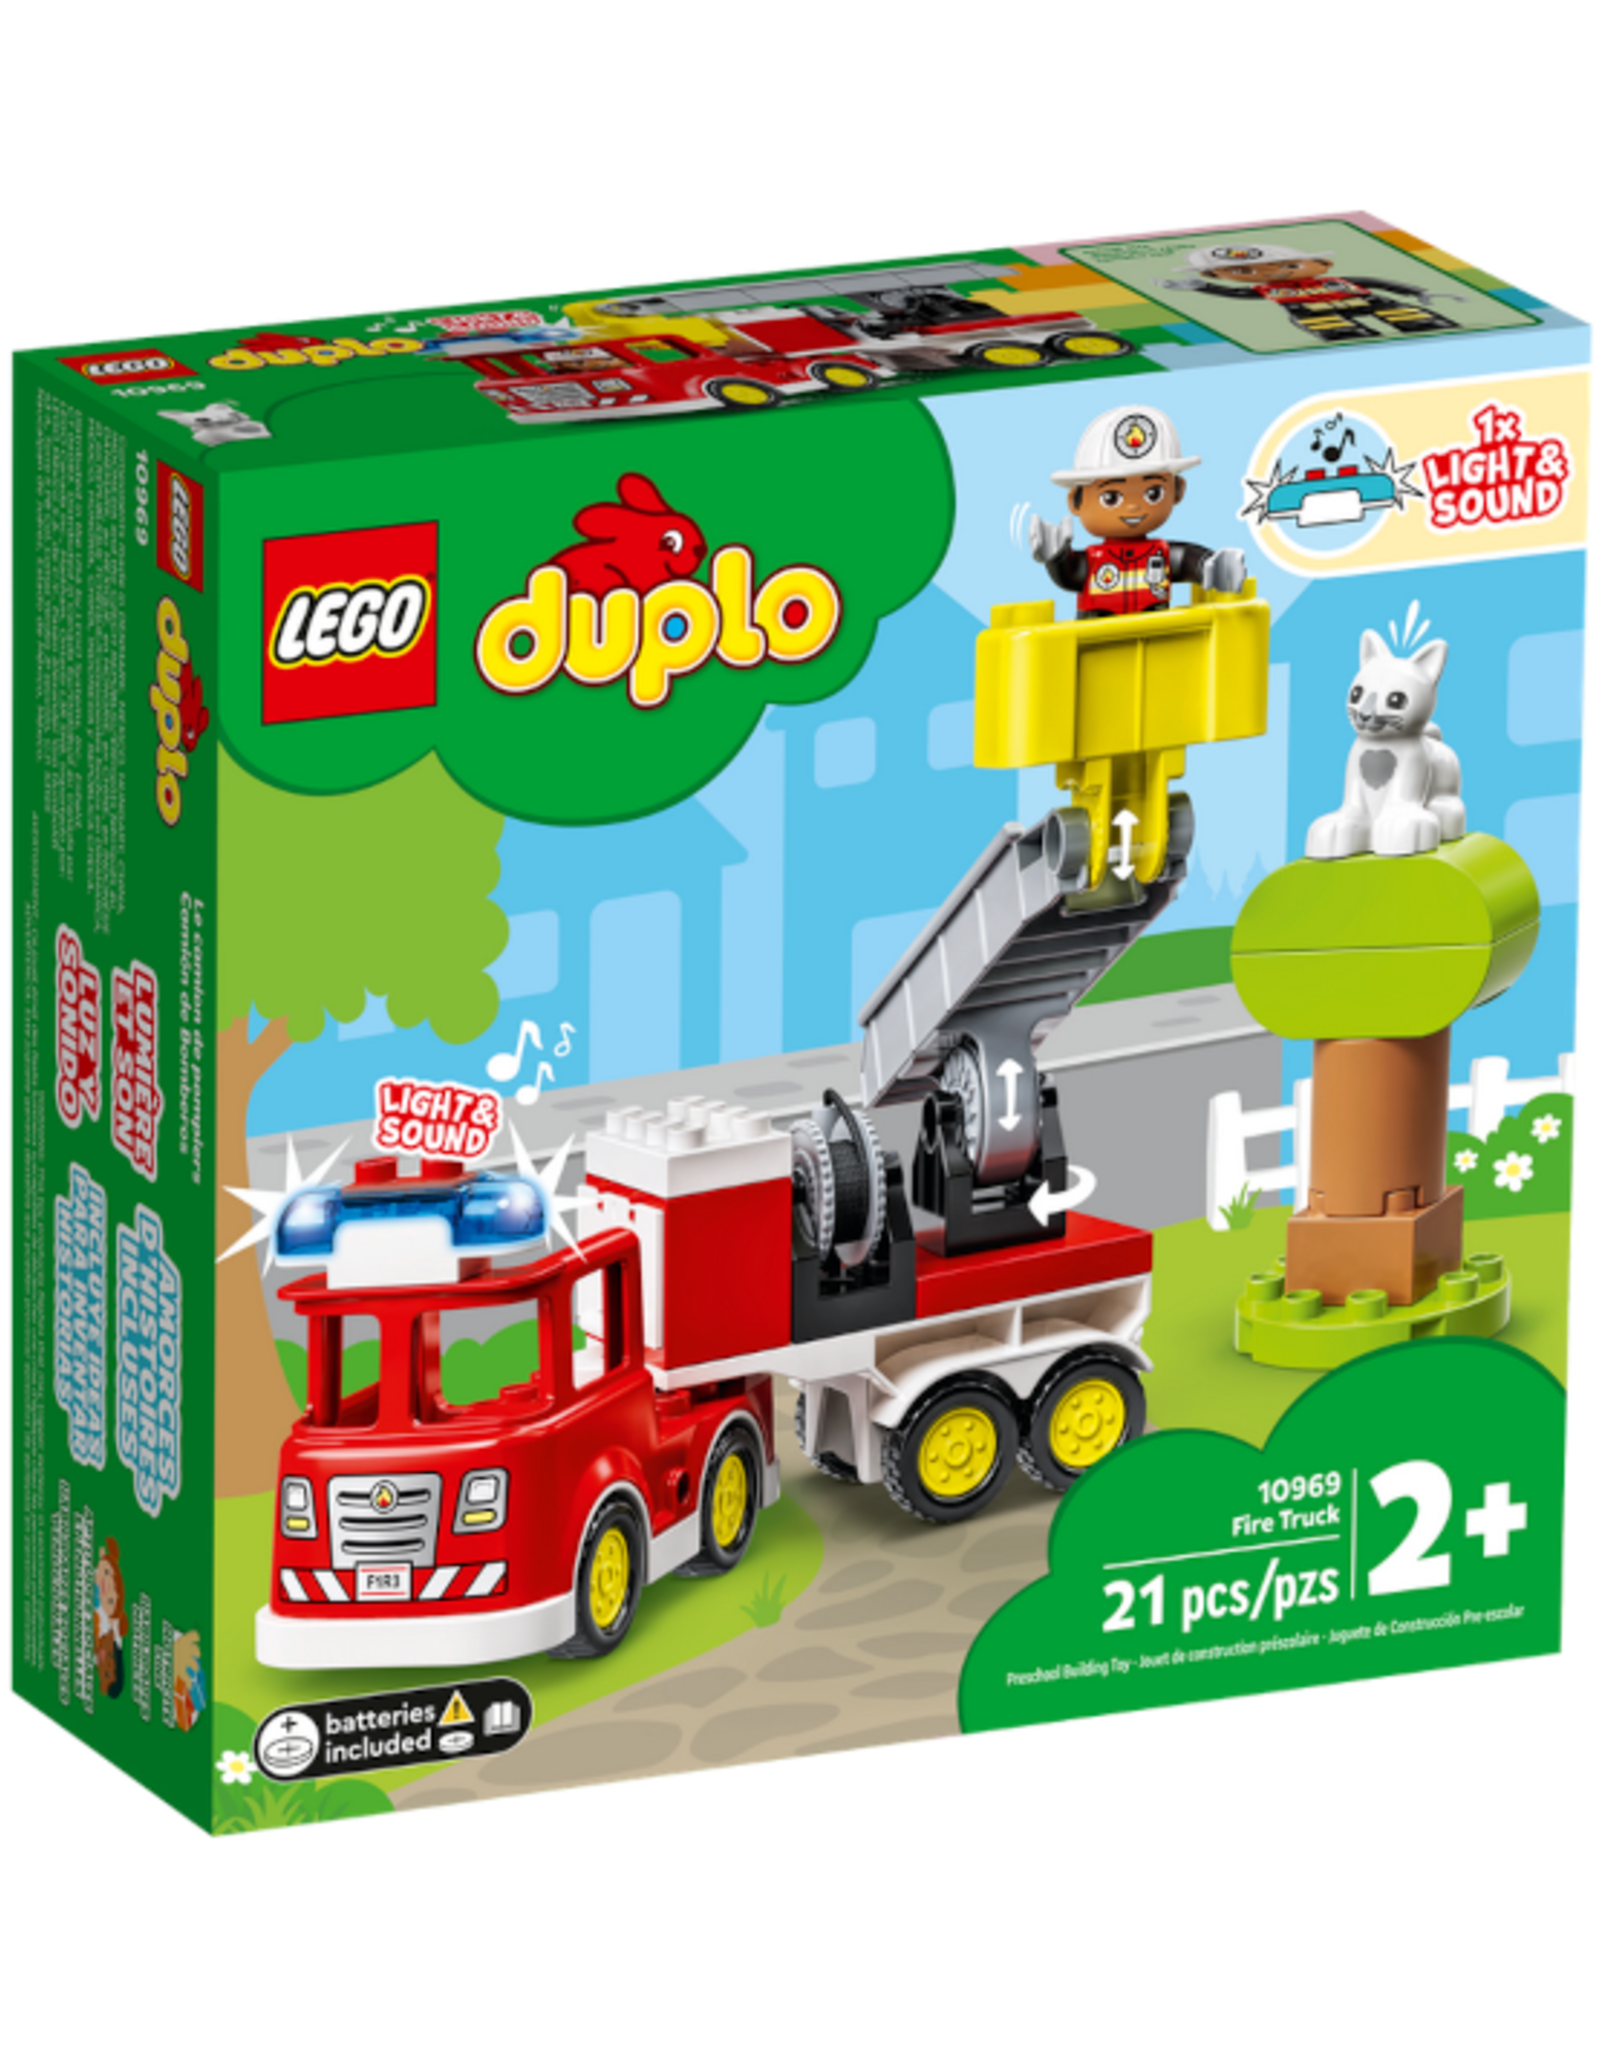 Lego Lego - Duplo - 10969 - Fire Truck